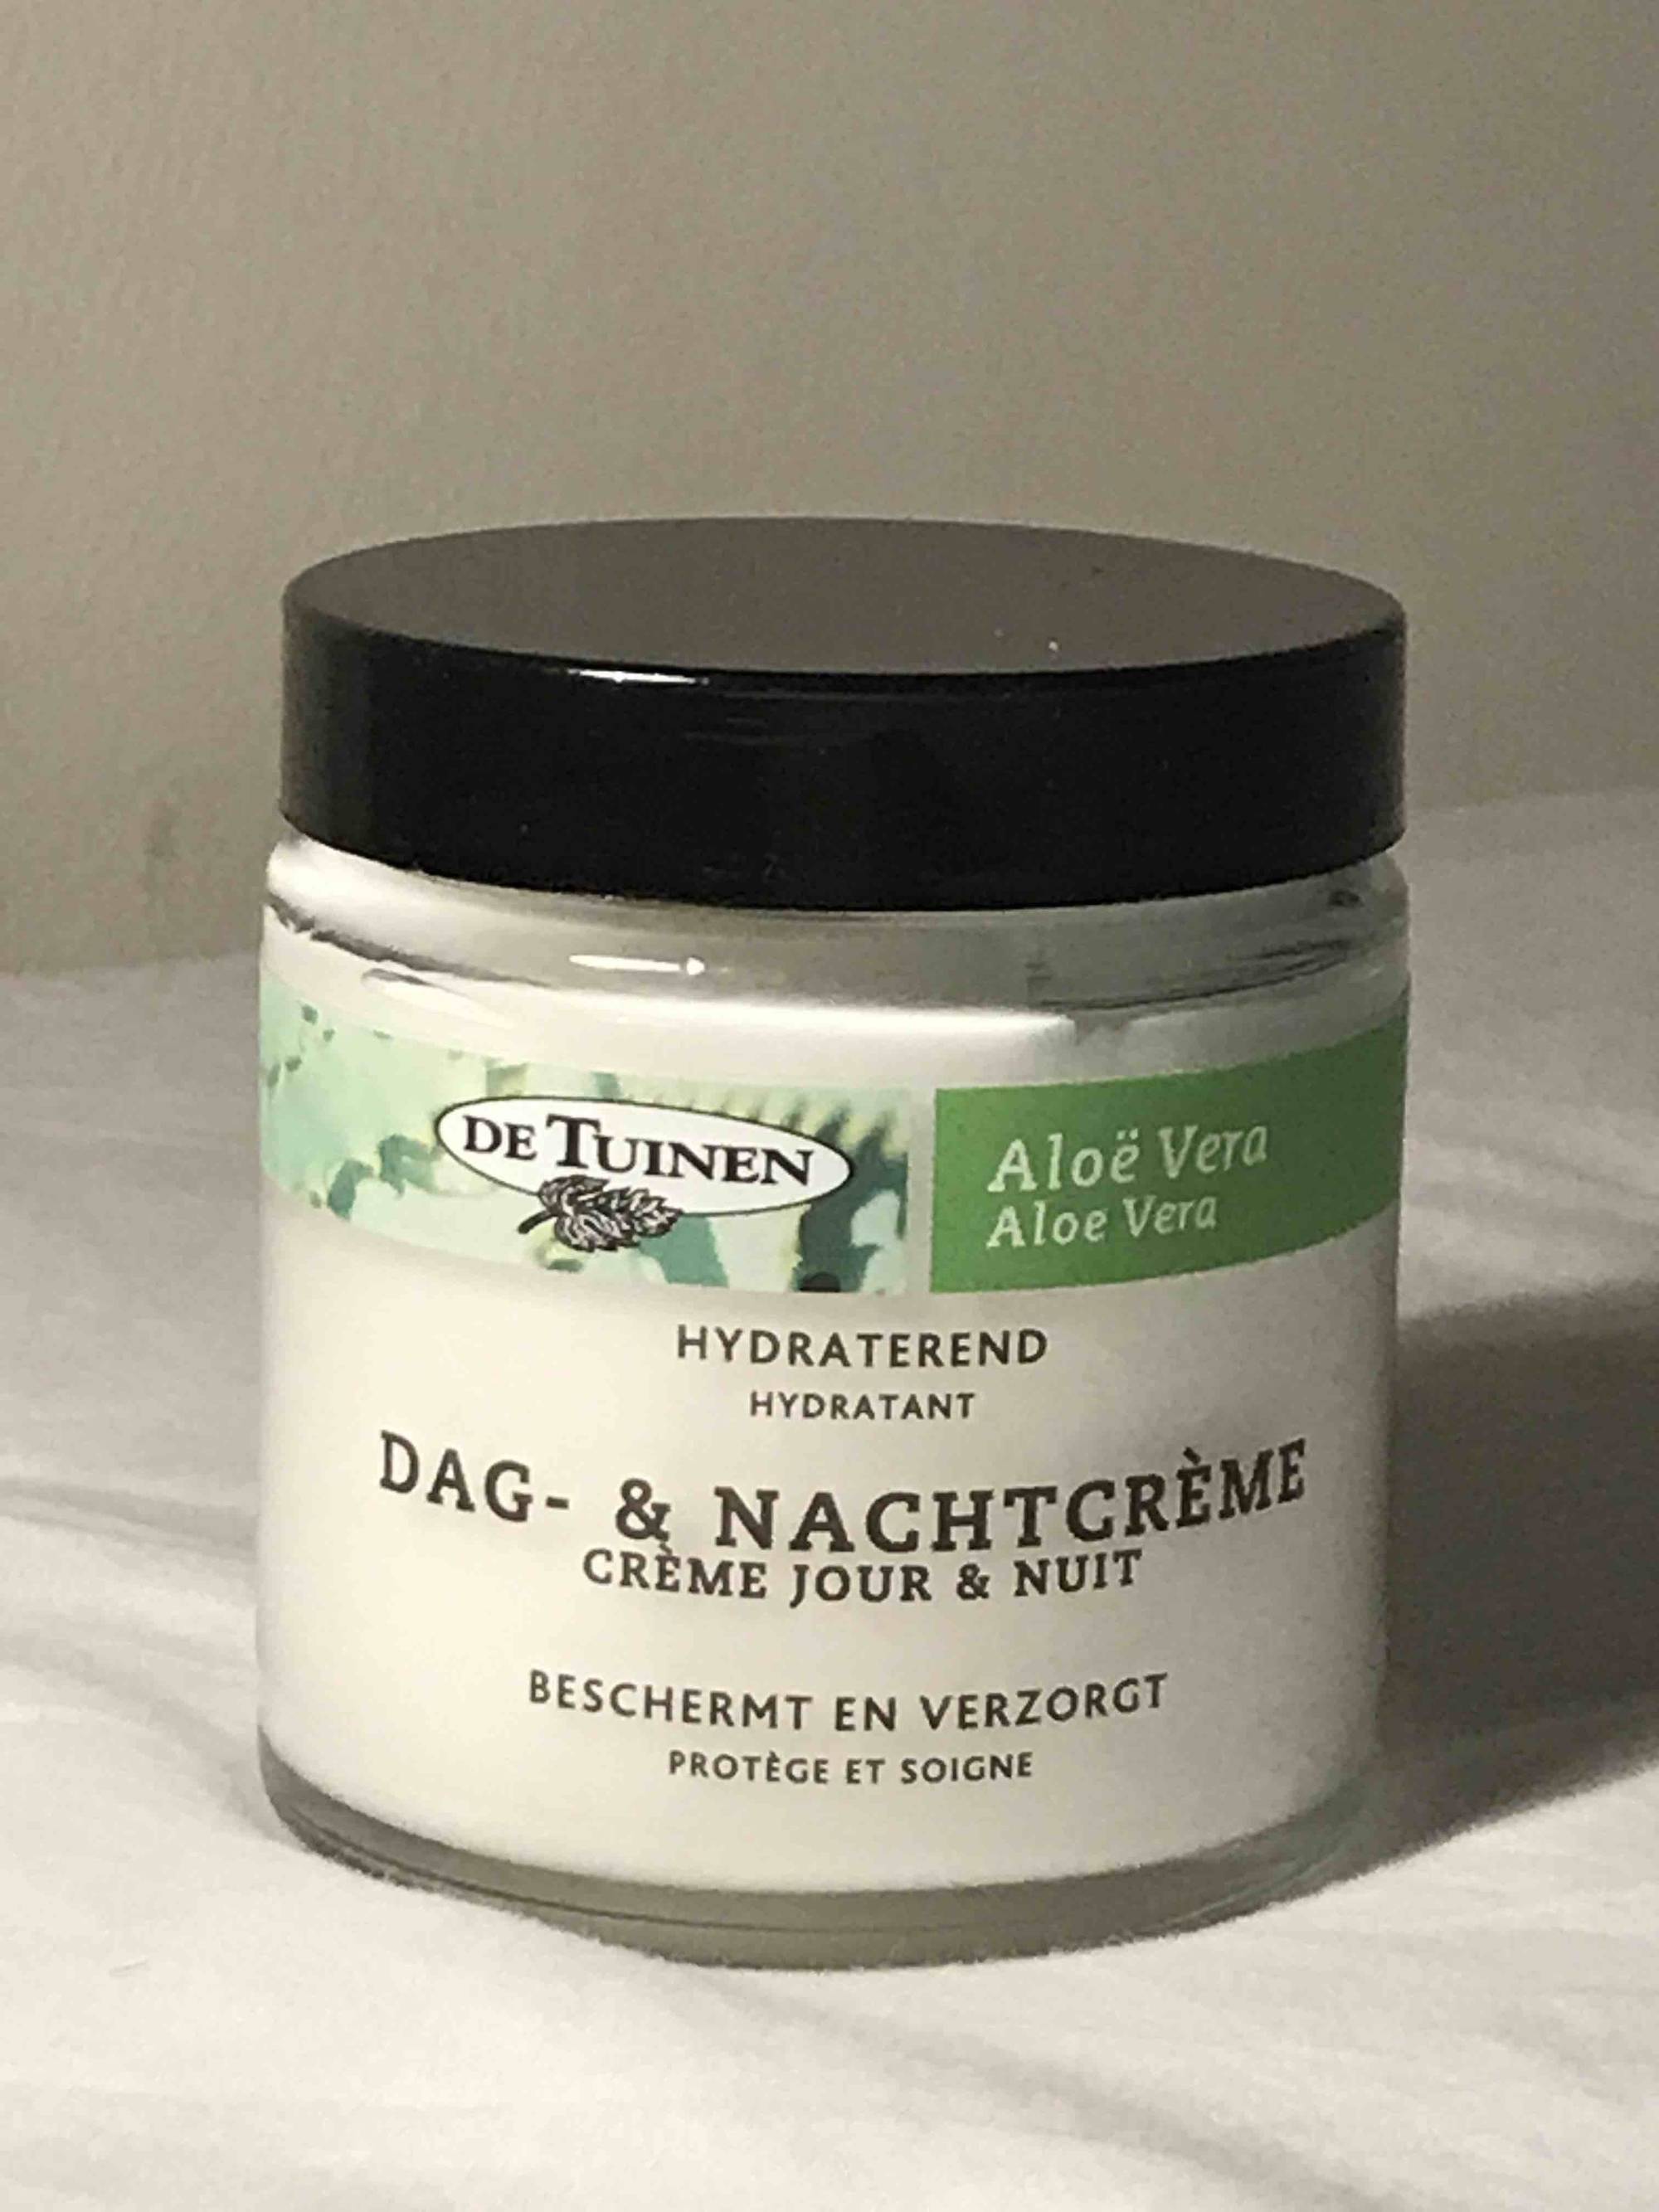 DE TUINEN - Aloe vera - Crème jour & nuit hydratant